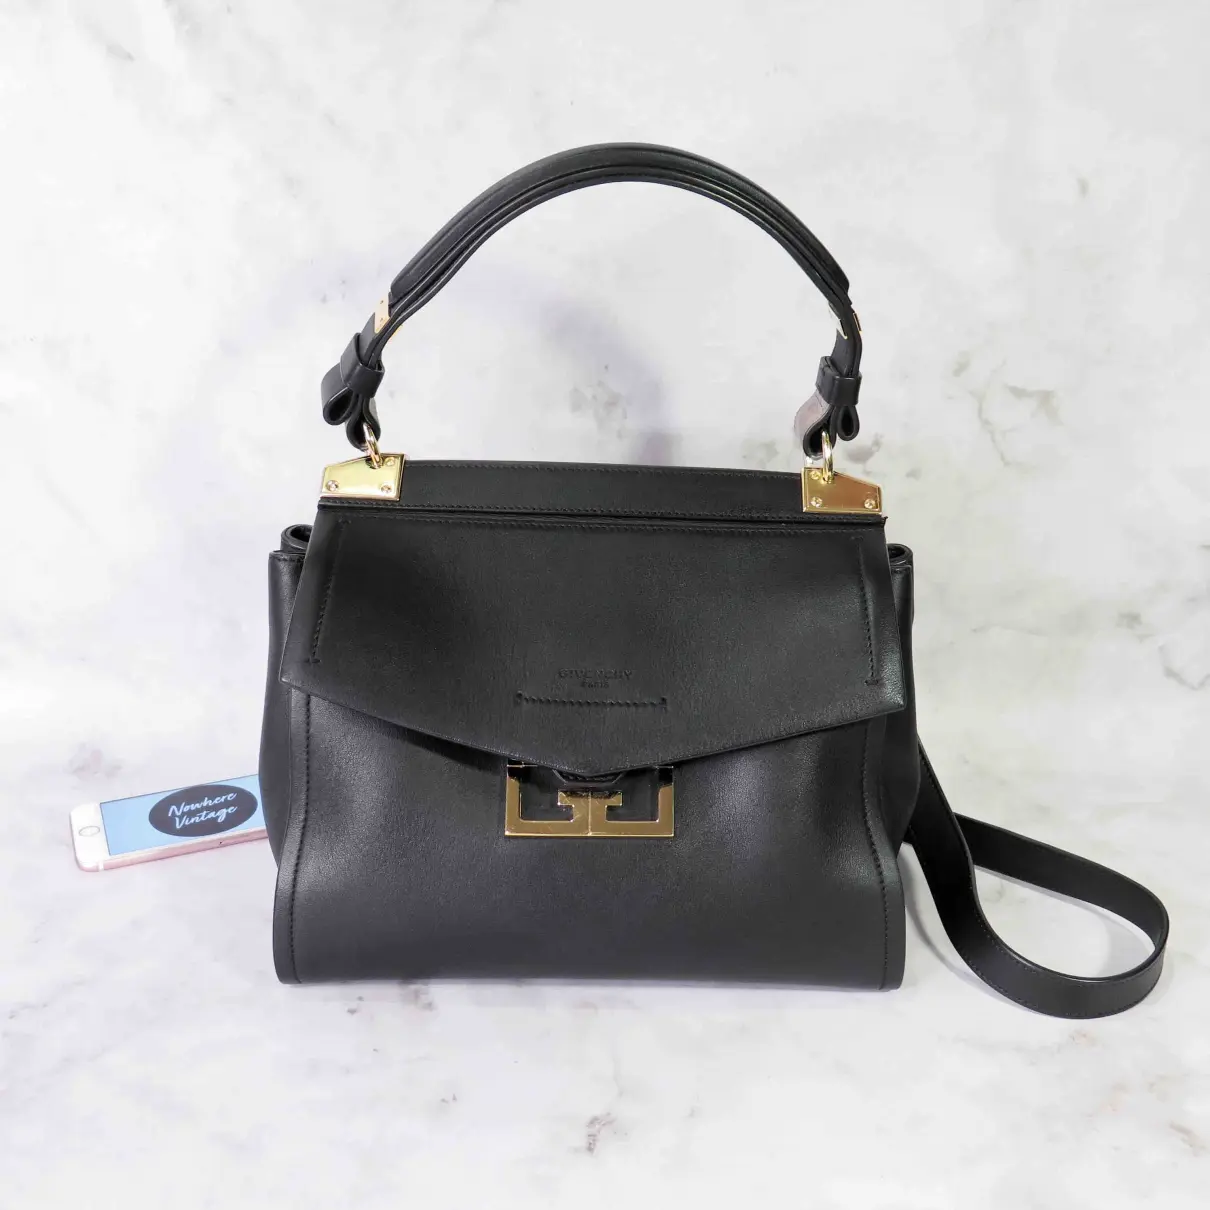 The Mystic bag leather handbag Givenchy